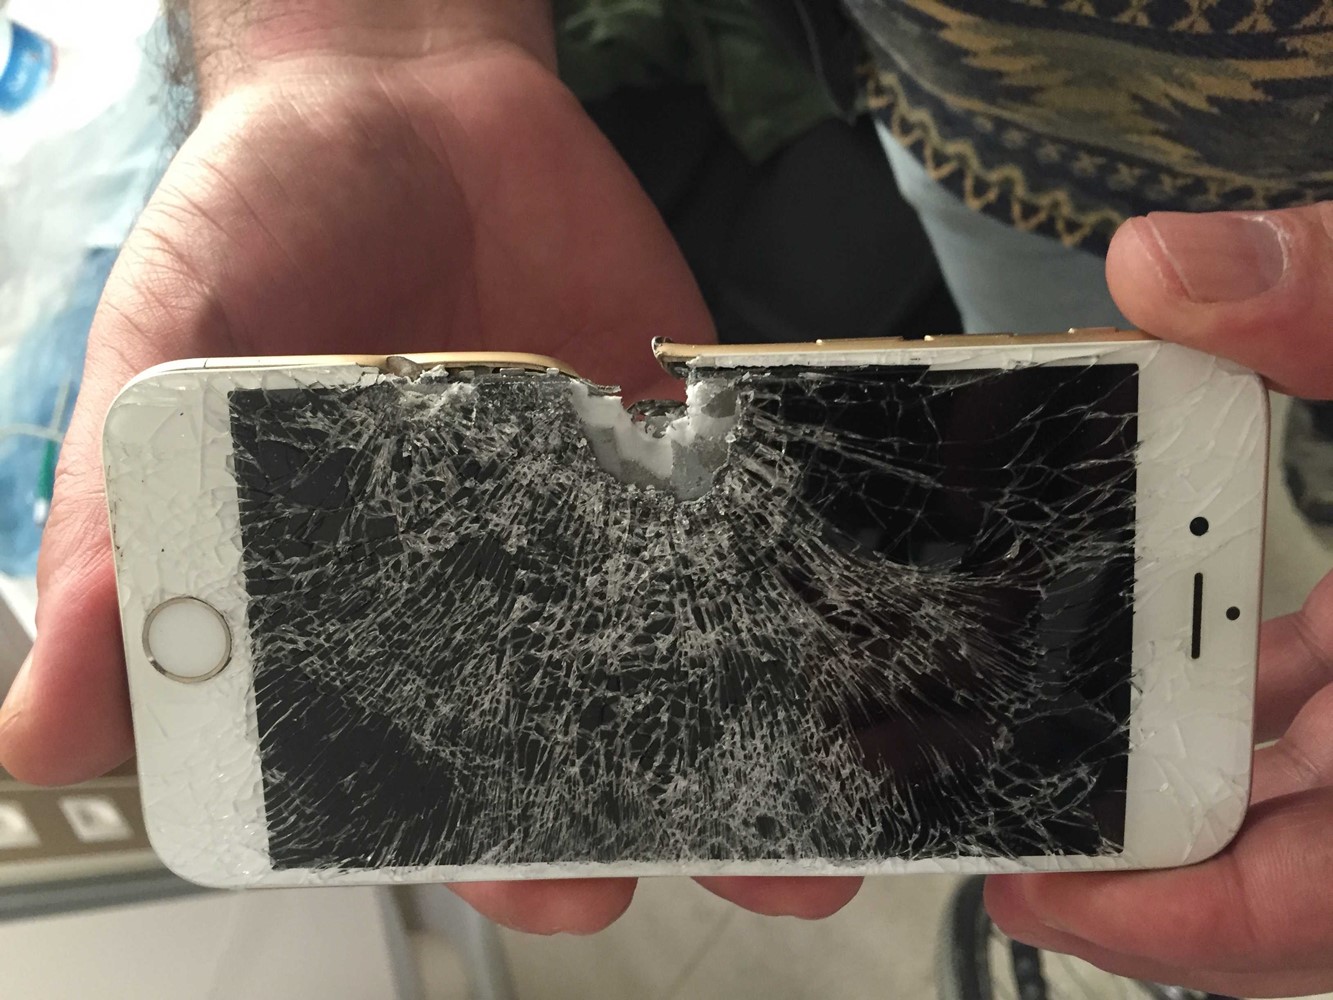 L'iPhone a sauvé le soldat